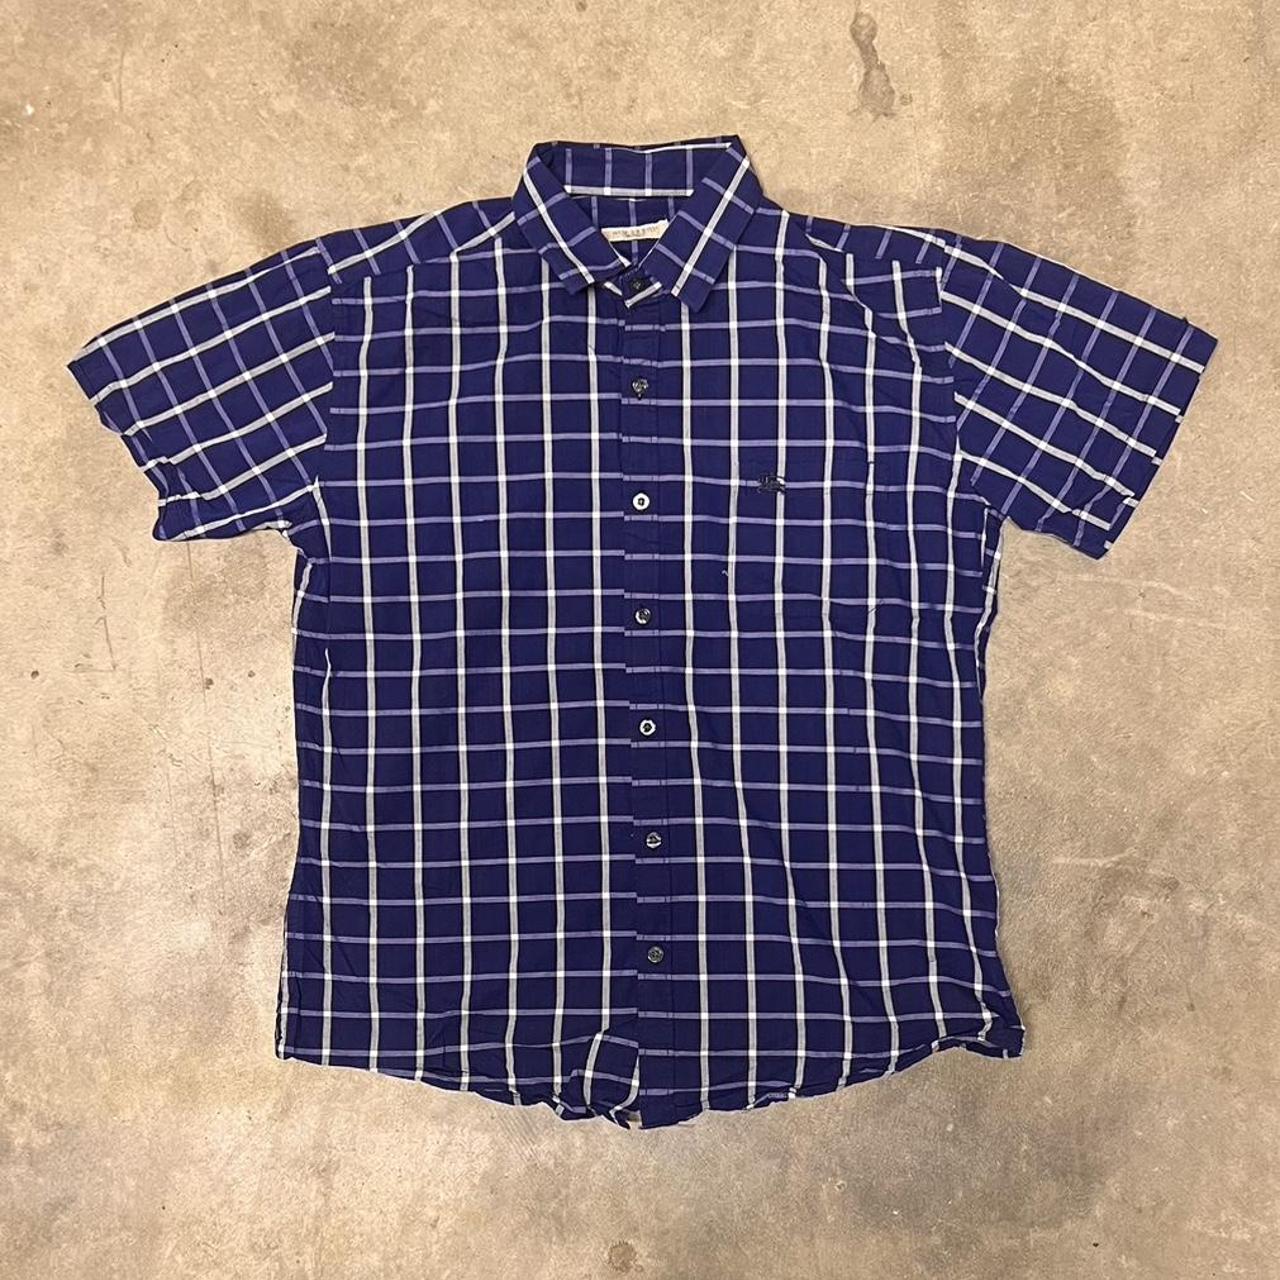 NAUTICA Blue Gingham Short Sleeve Shirt - Size Large